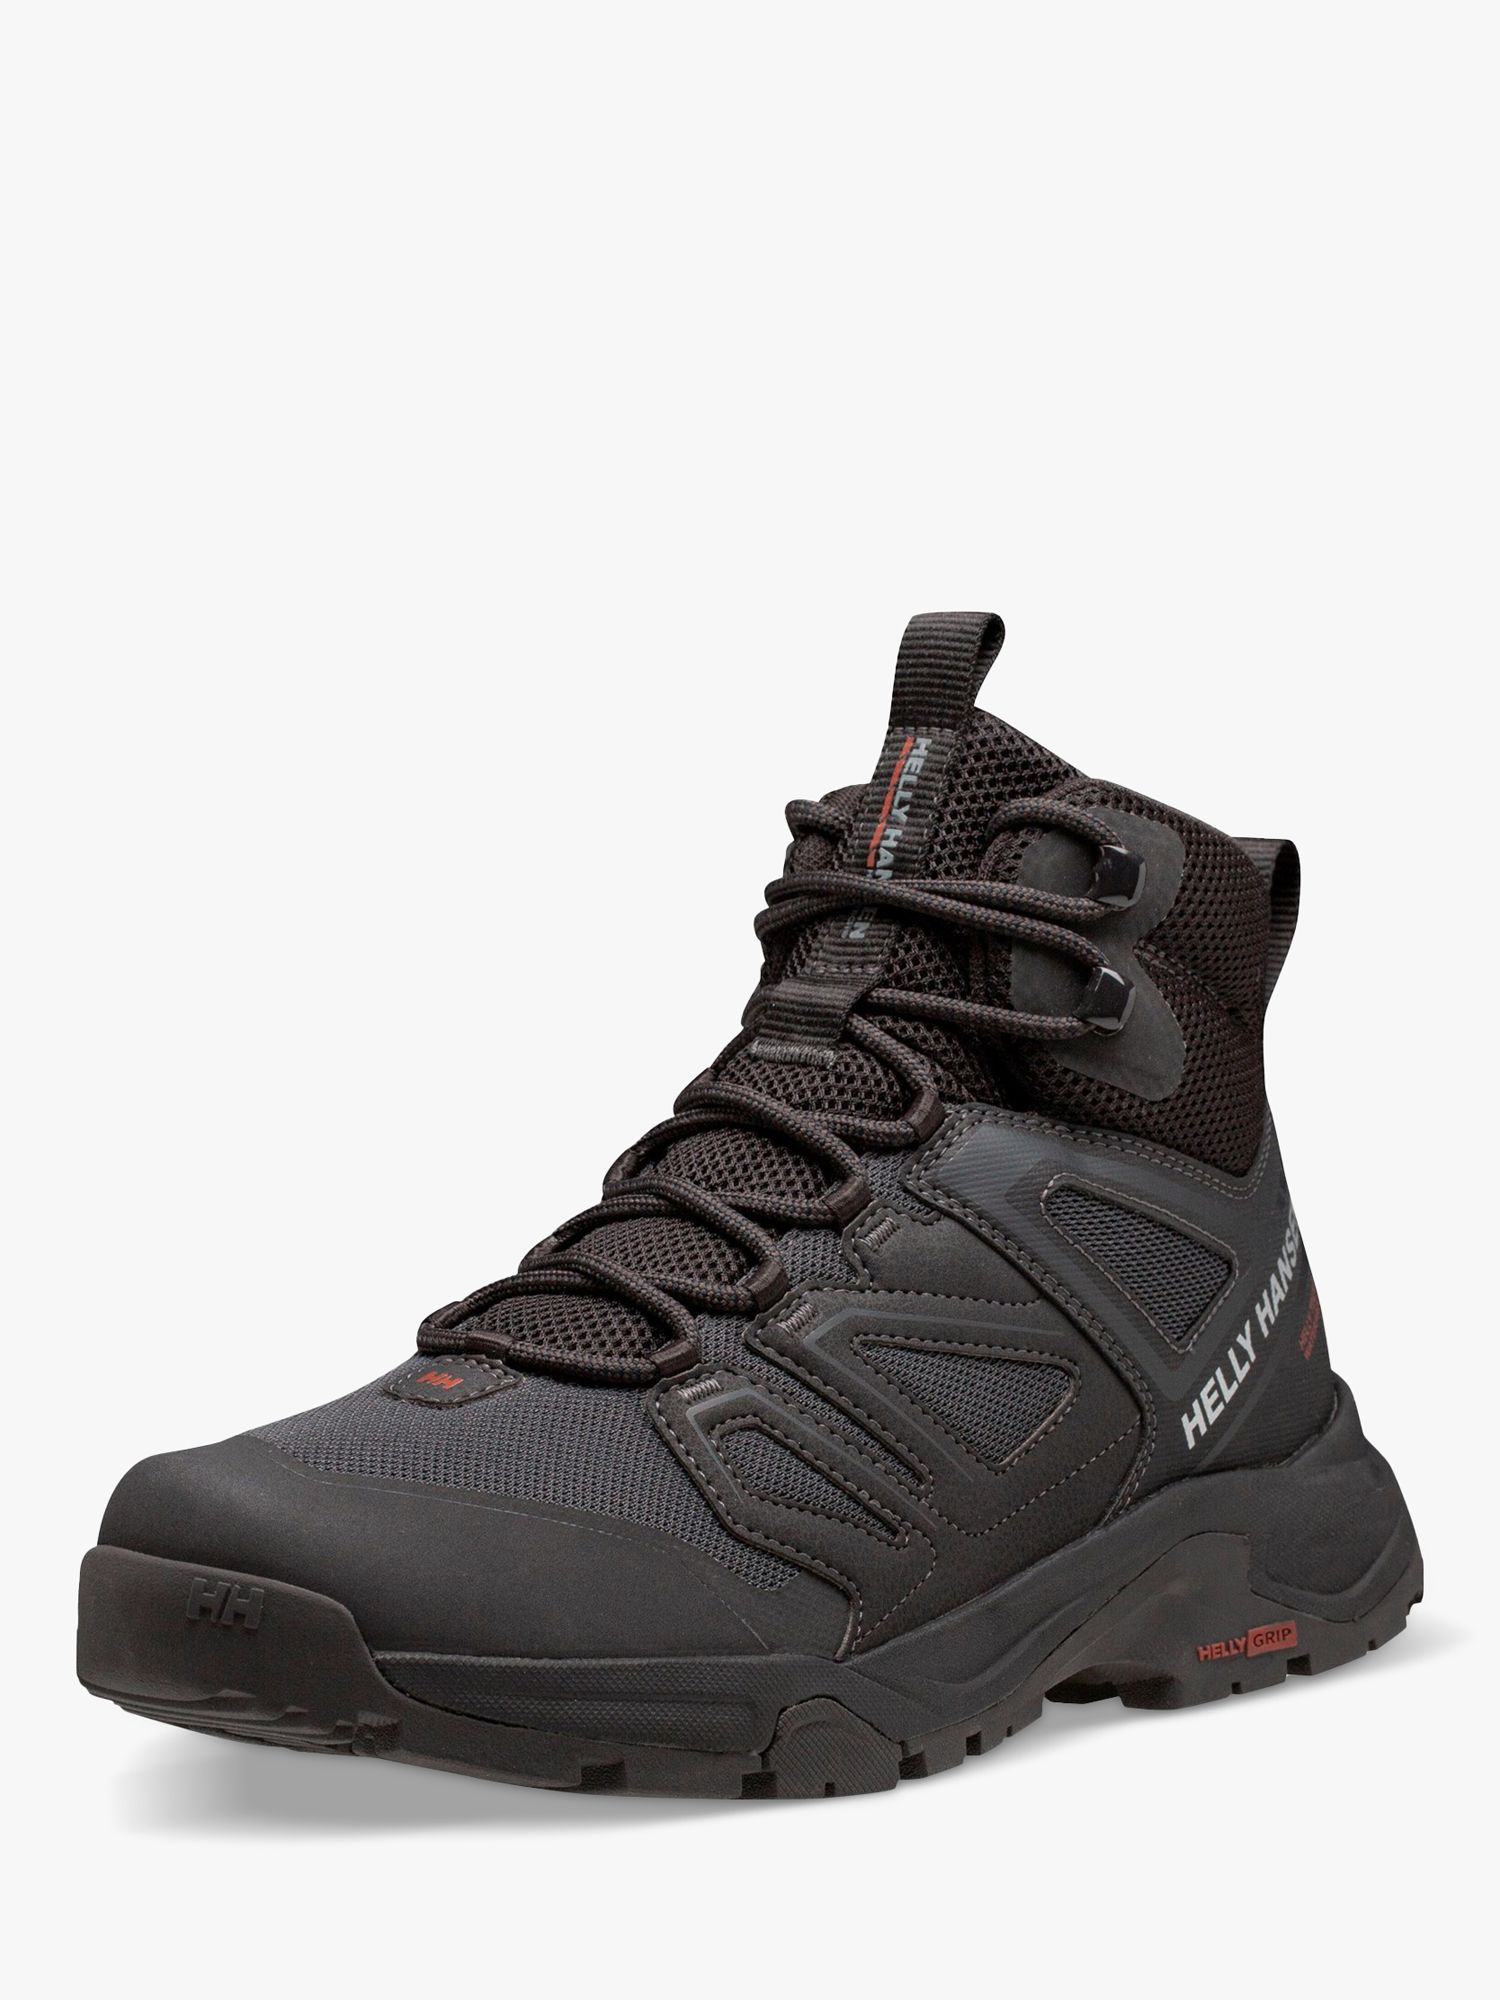 Helly Hansen Stalheim Hiking Boots, Black, 8